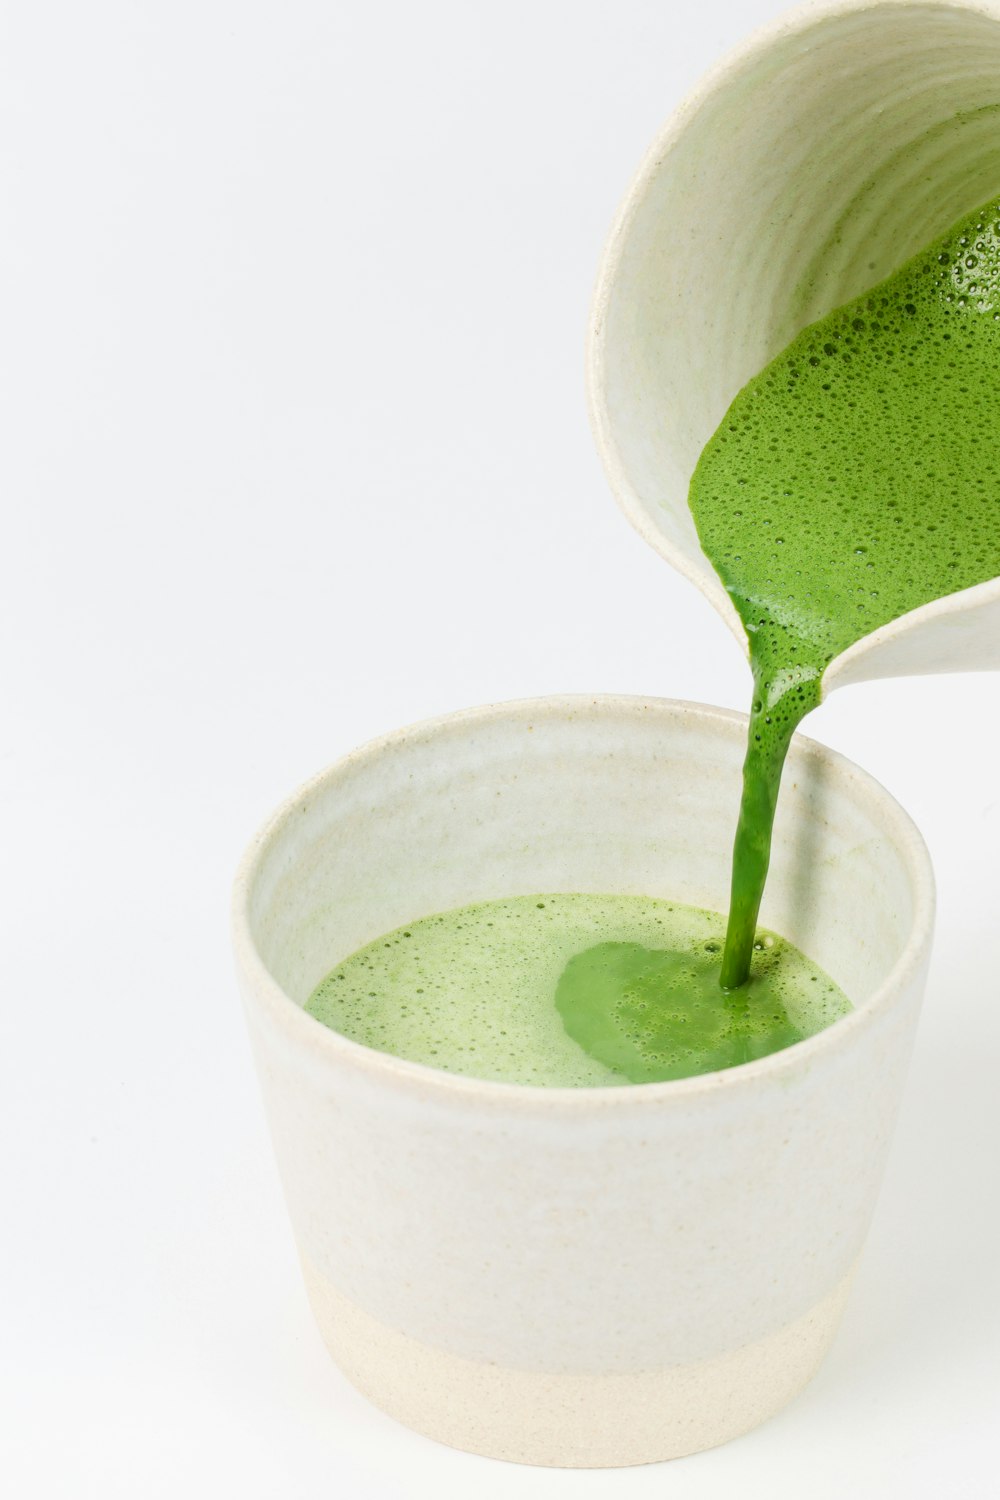 Líquido verde en vaso de cerámica blanca